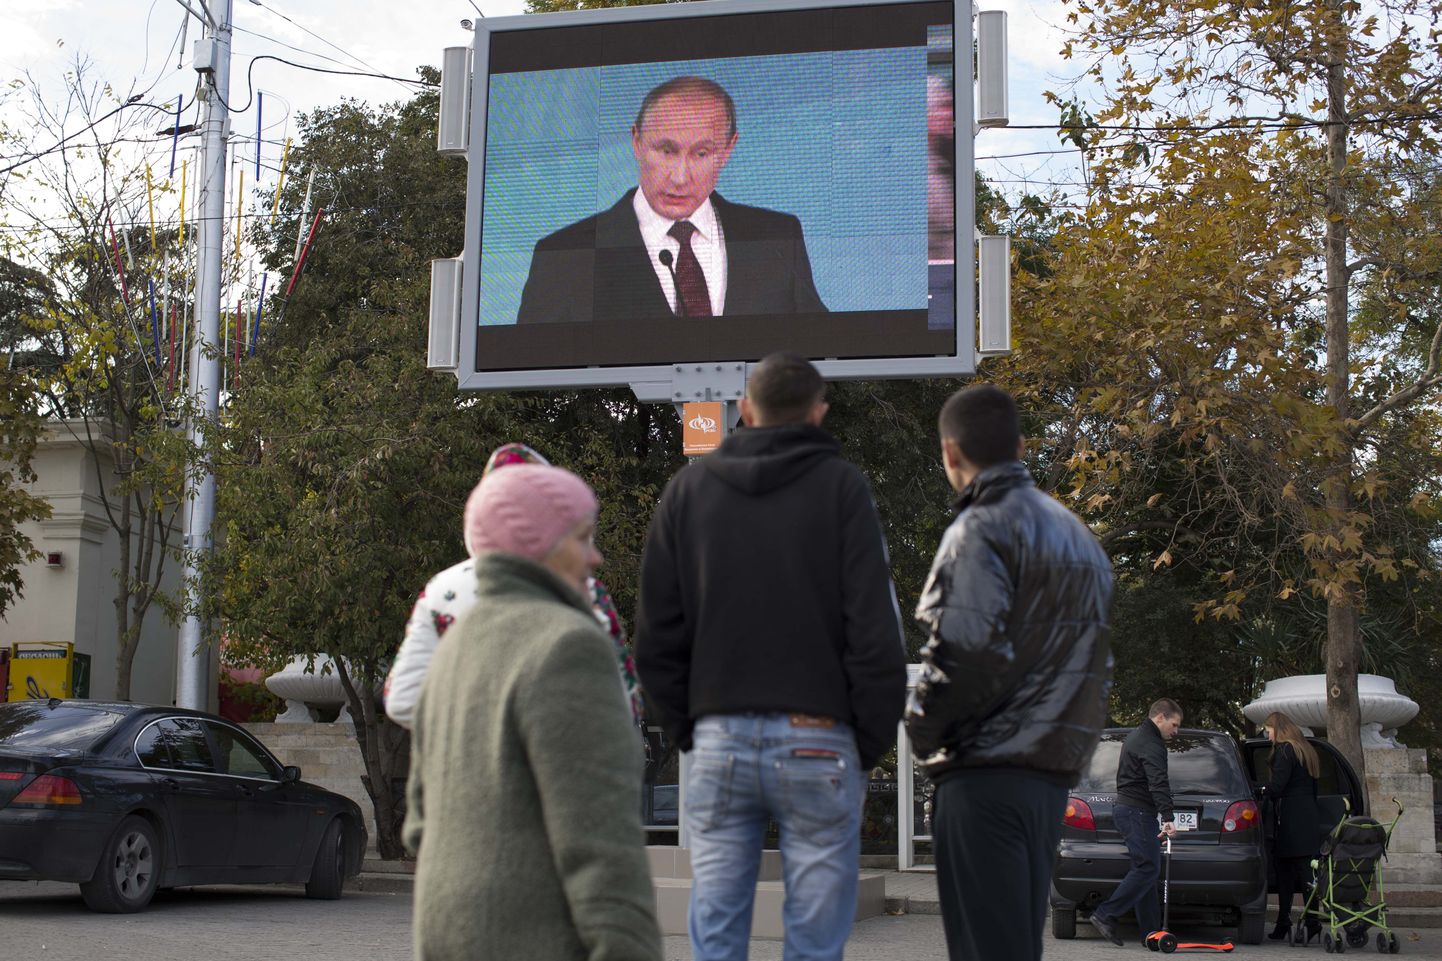 Suur ekraan tänaval näitab Venemaa president Vladimir Putinit poliitikast rääkides.